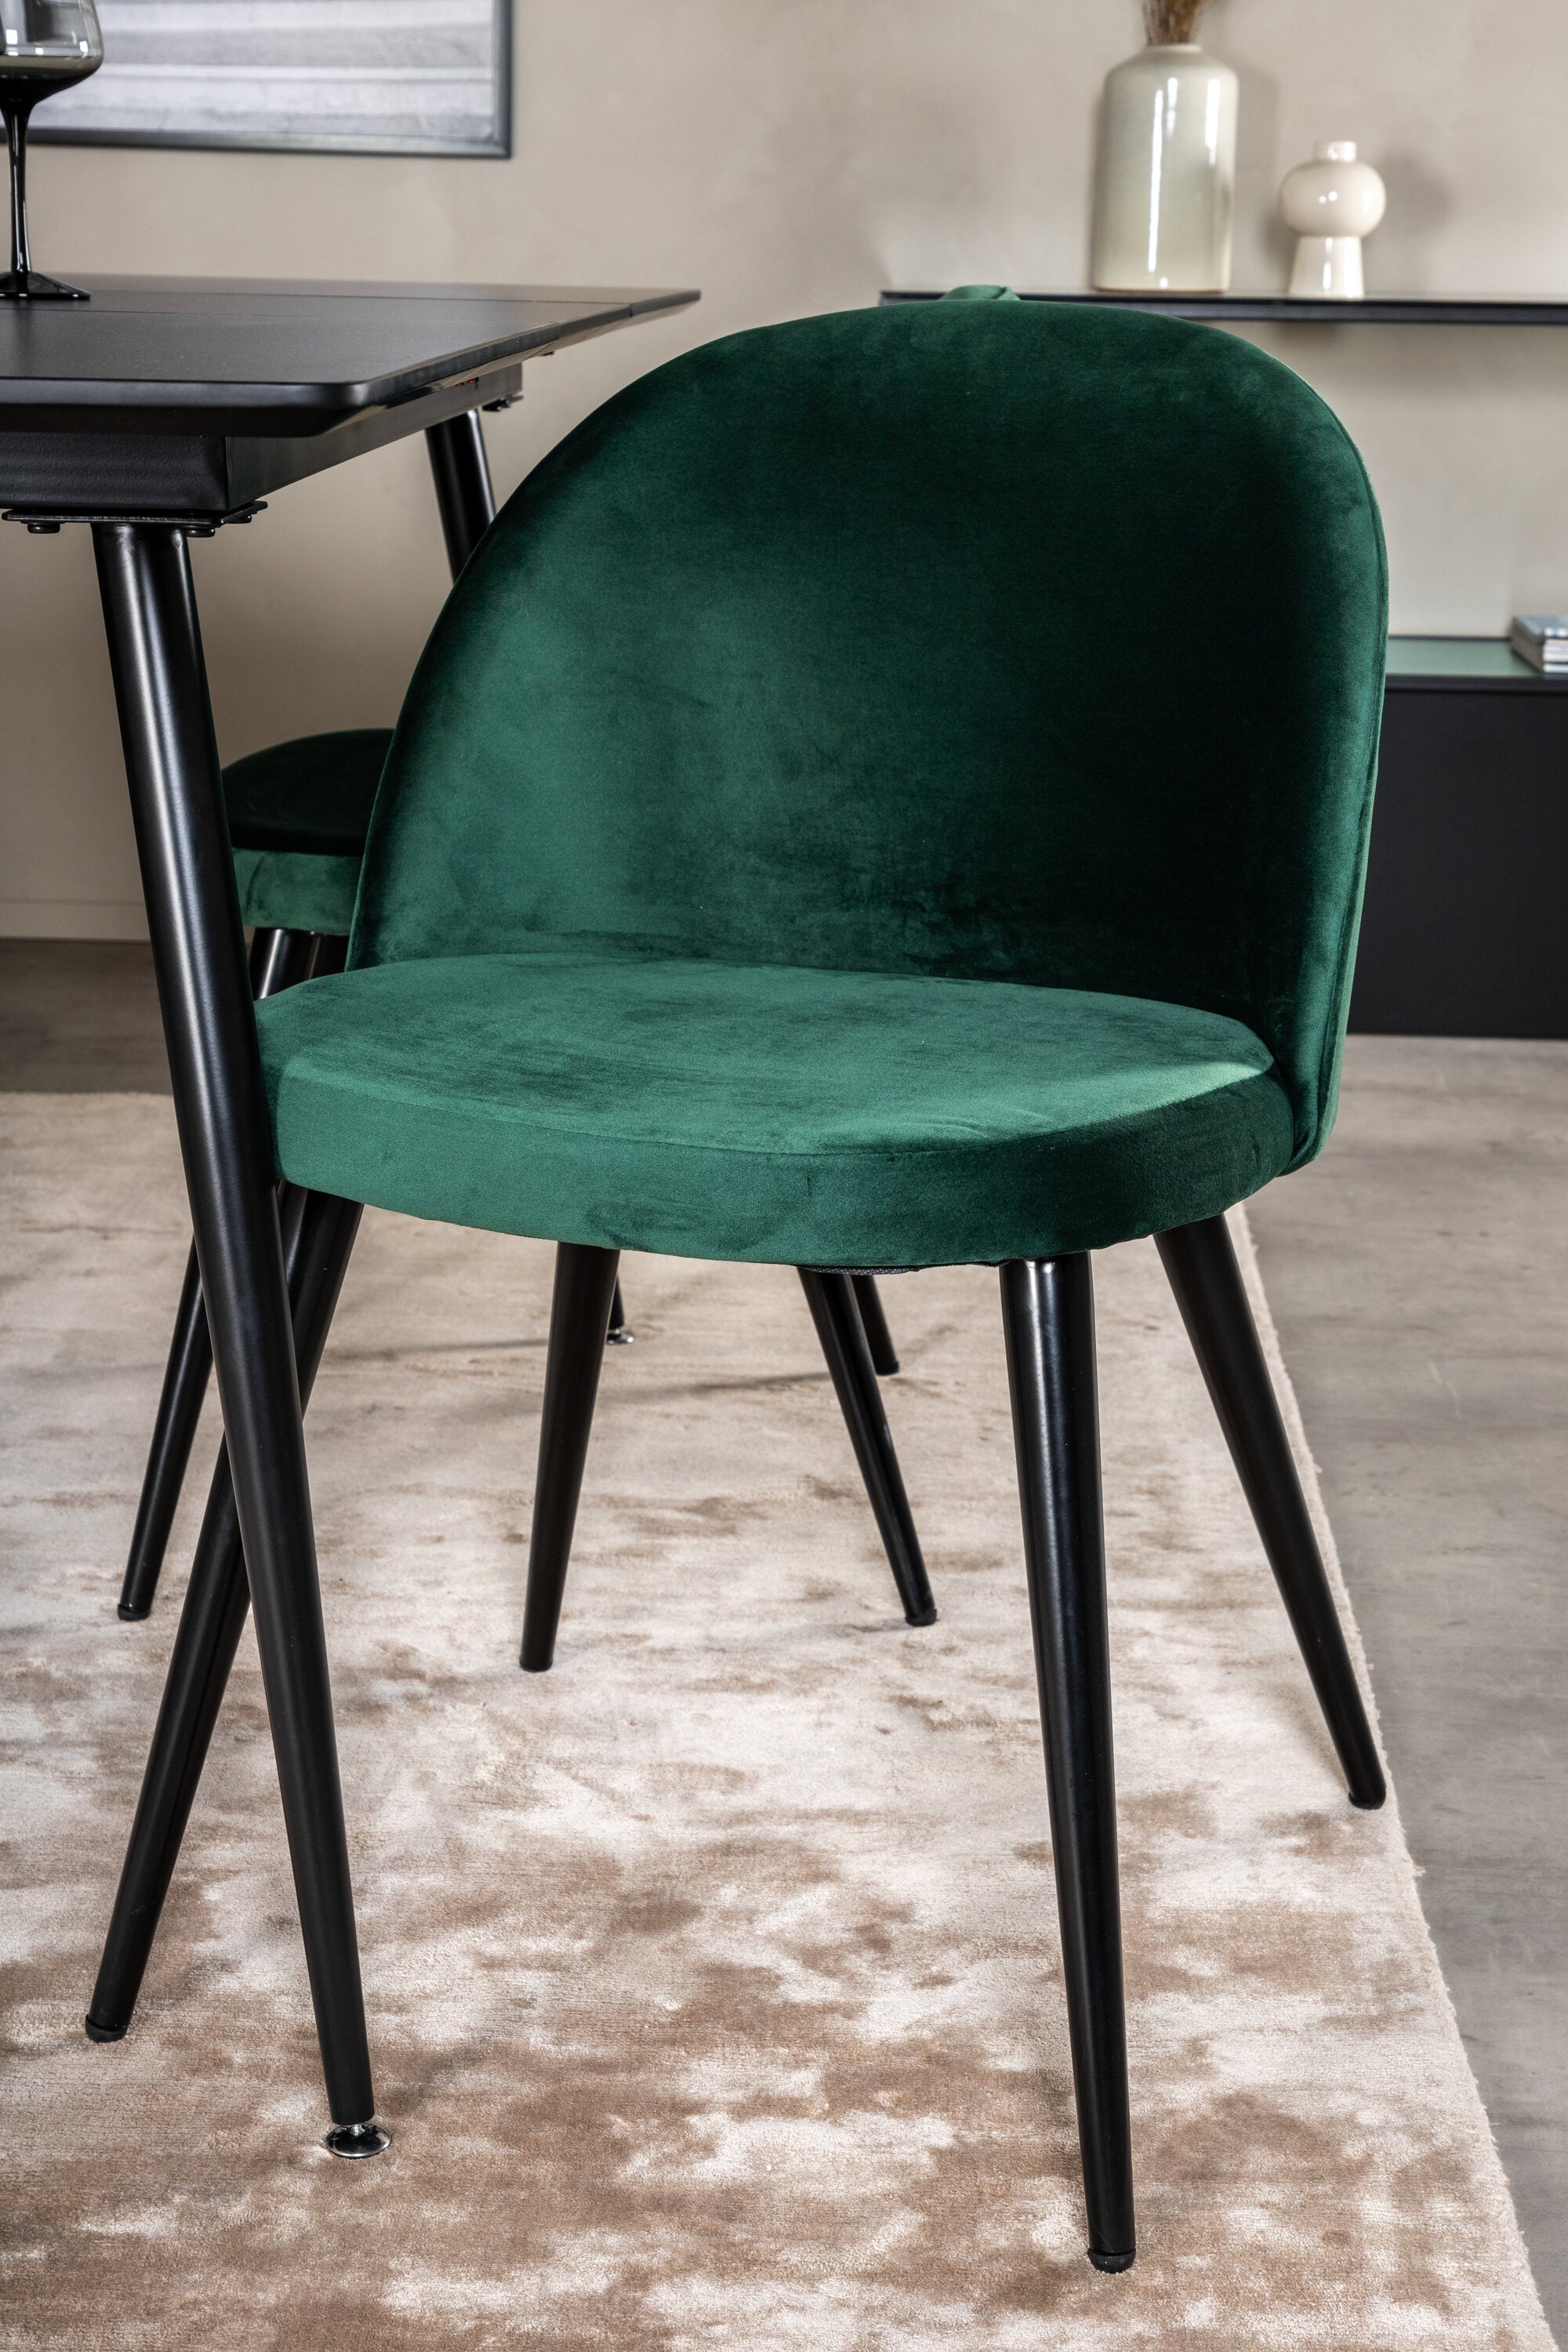 Silar Esszimmerset ausziehbar + Velvet 120cm/4St. in Schwarz / Grün präsentiert im Onlineshop von KAQTU Design AG. Esszimmerset ist von Venture Home